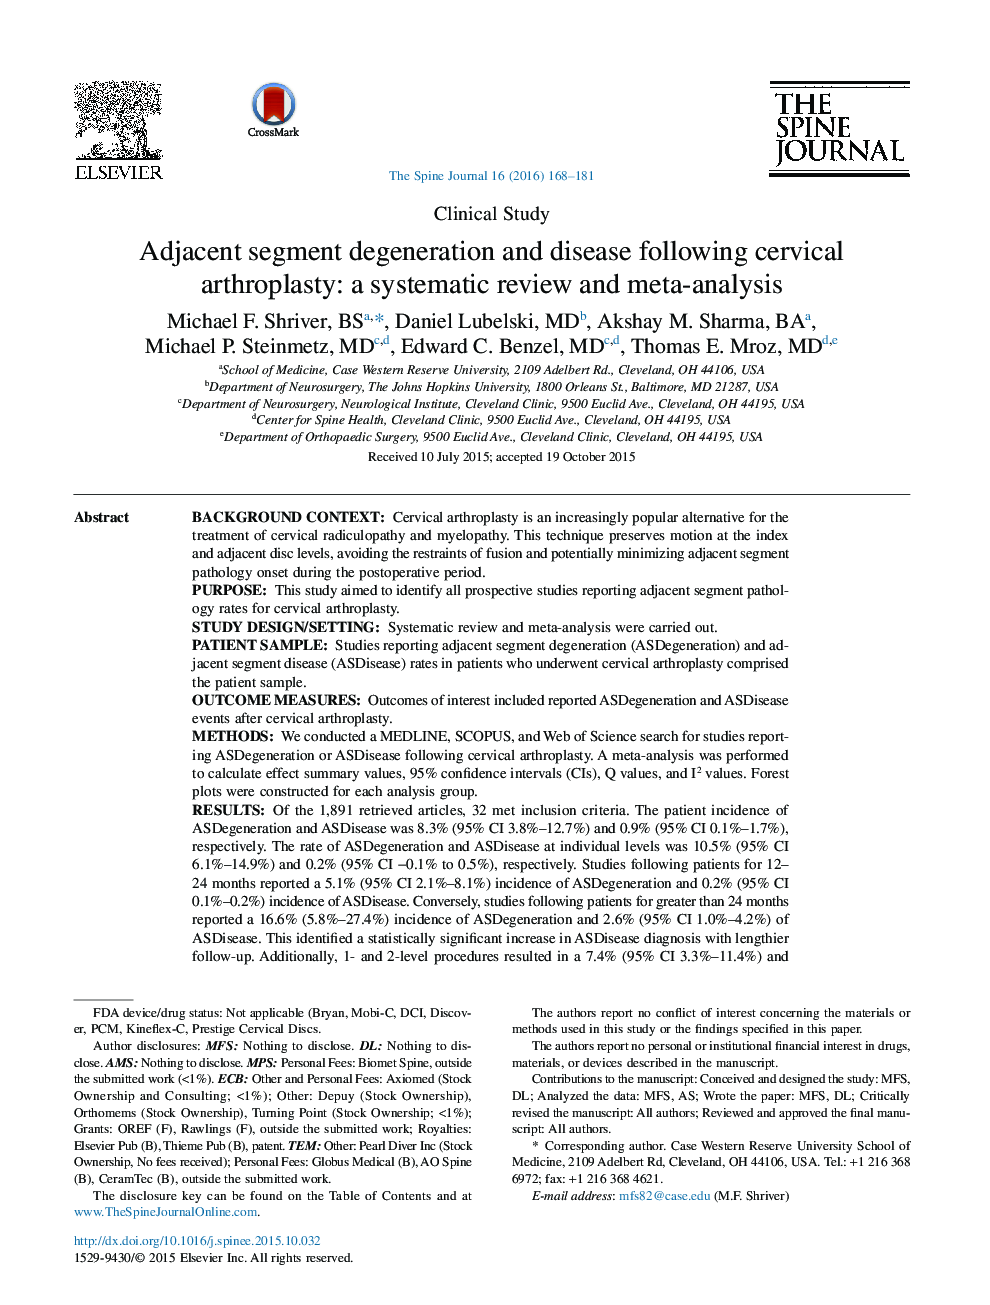 دژنراسیون بخش مجاور و بیماری پس از آرتروپلاستی گردن: یک بررسی سیستماتیک و متاآنالیز 